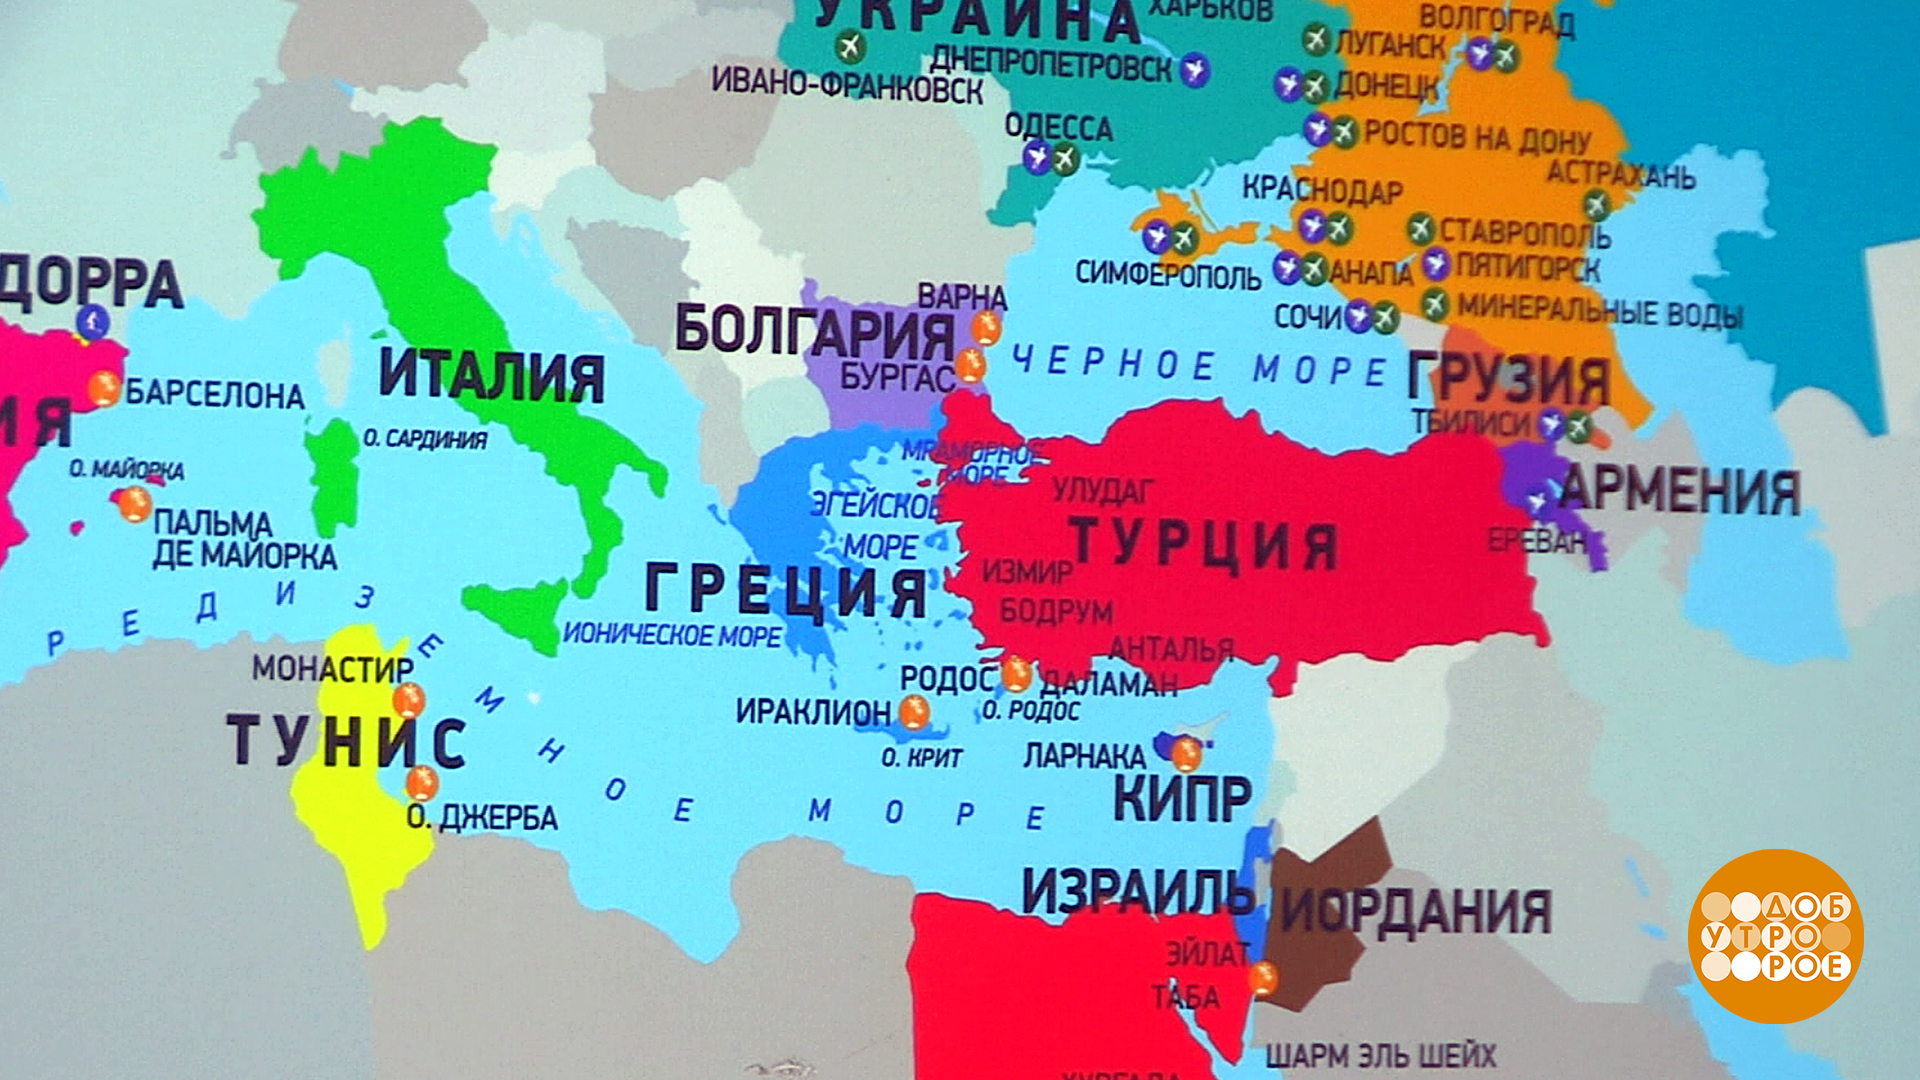 Карта мира со странами крупно на русском Джерба